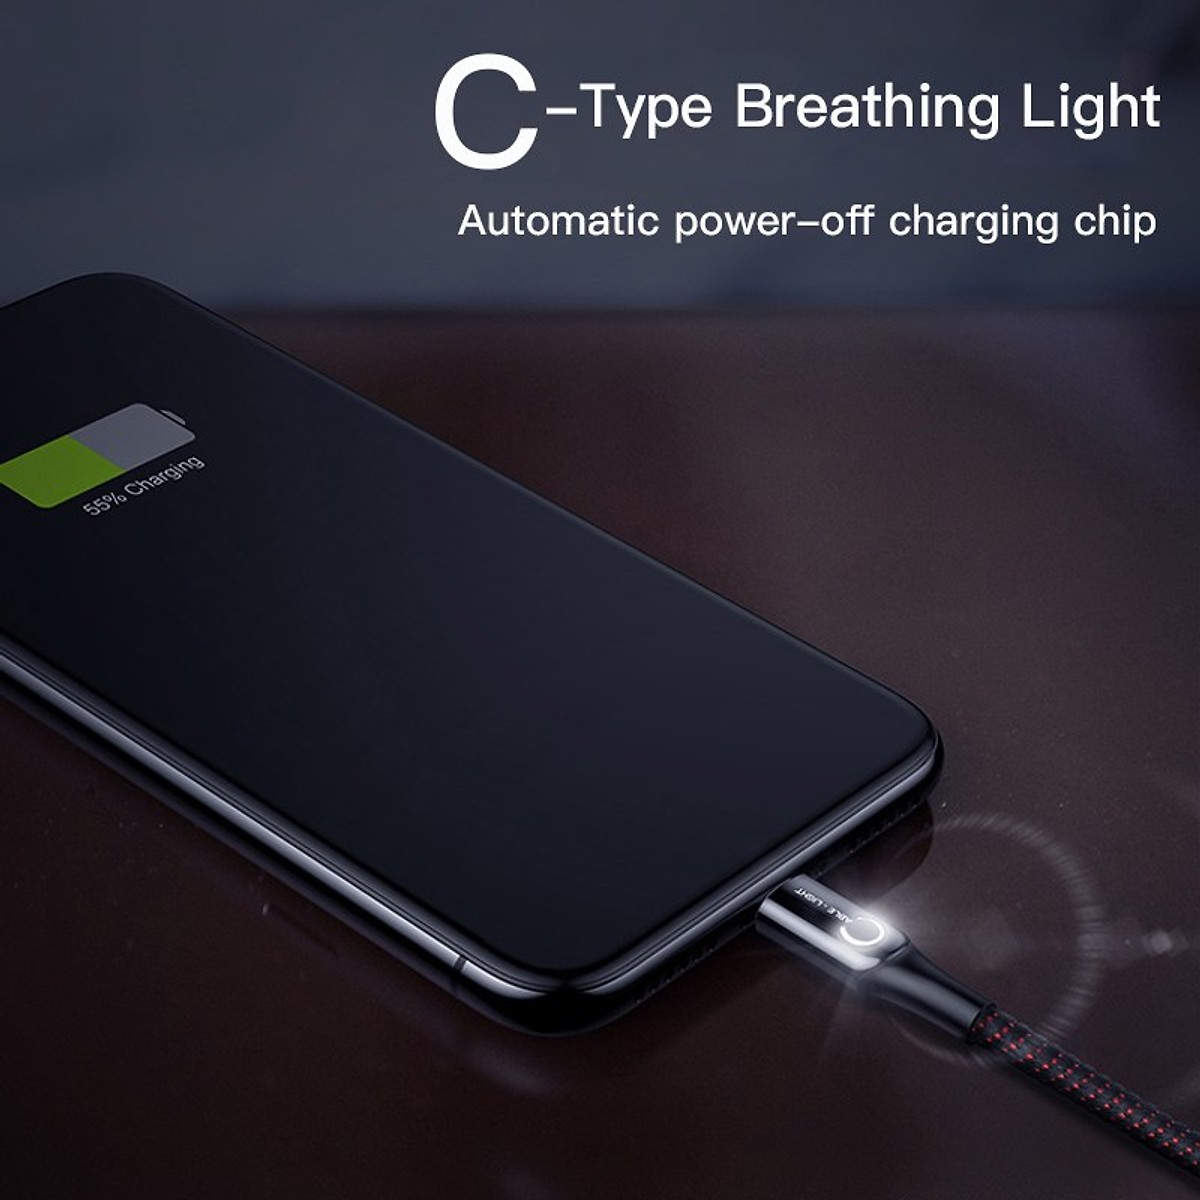 product Dây Cáp sạc nhanh cho iPhone iPad tự ngắt thông minh hiệu Baseus C Shape Light (2.4A, Sạc nhanh, Sợi Carbon Siêu Bền, LED, Intelligent power-off) - hàng nhập khẩu